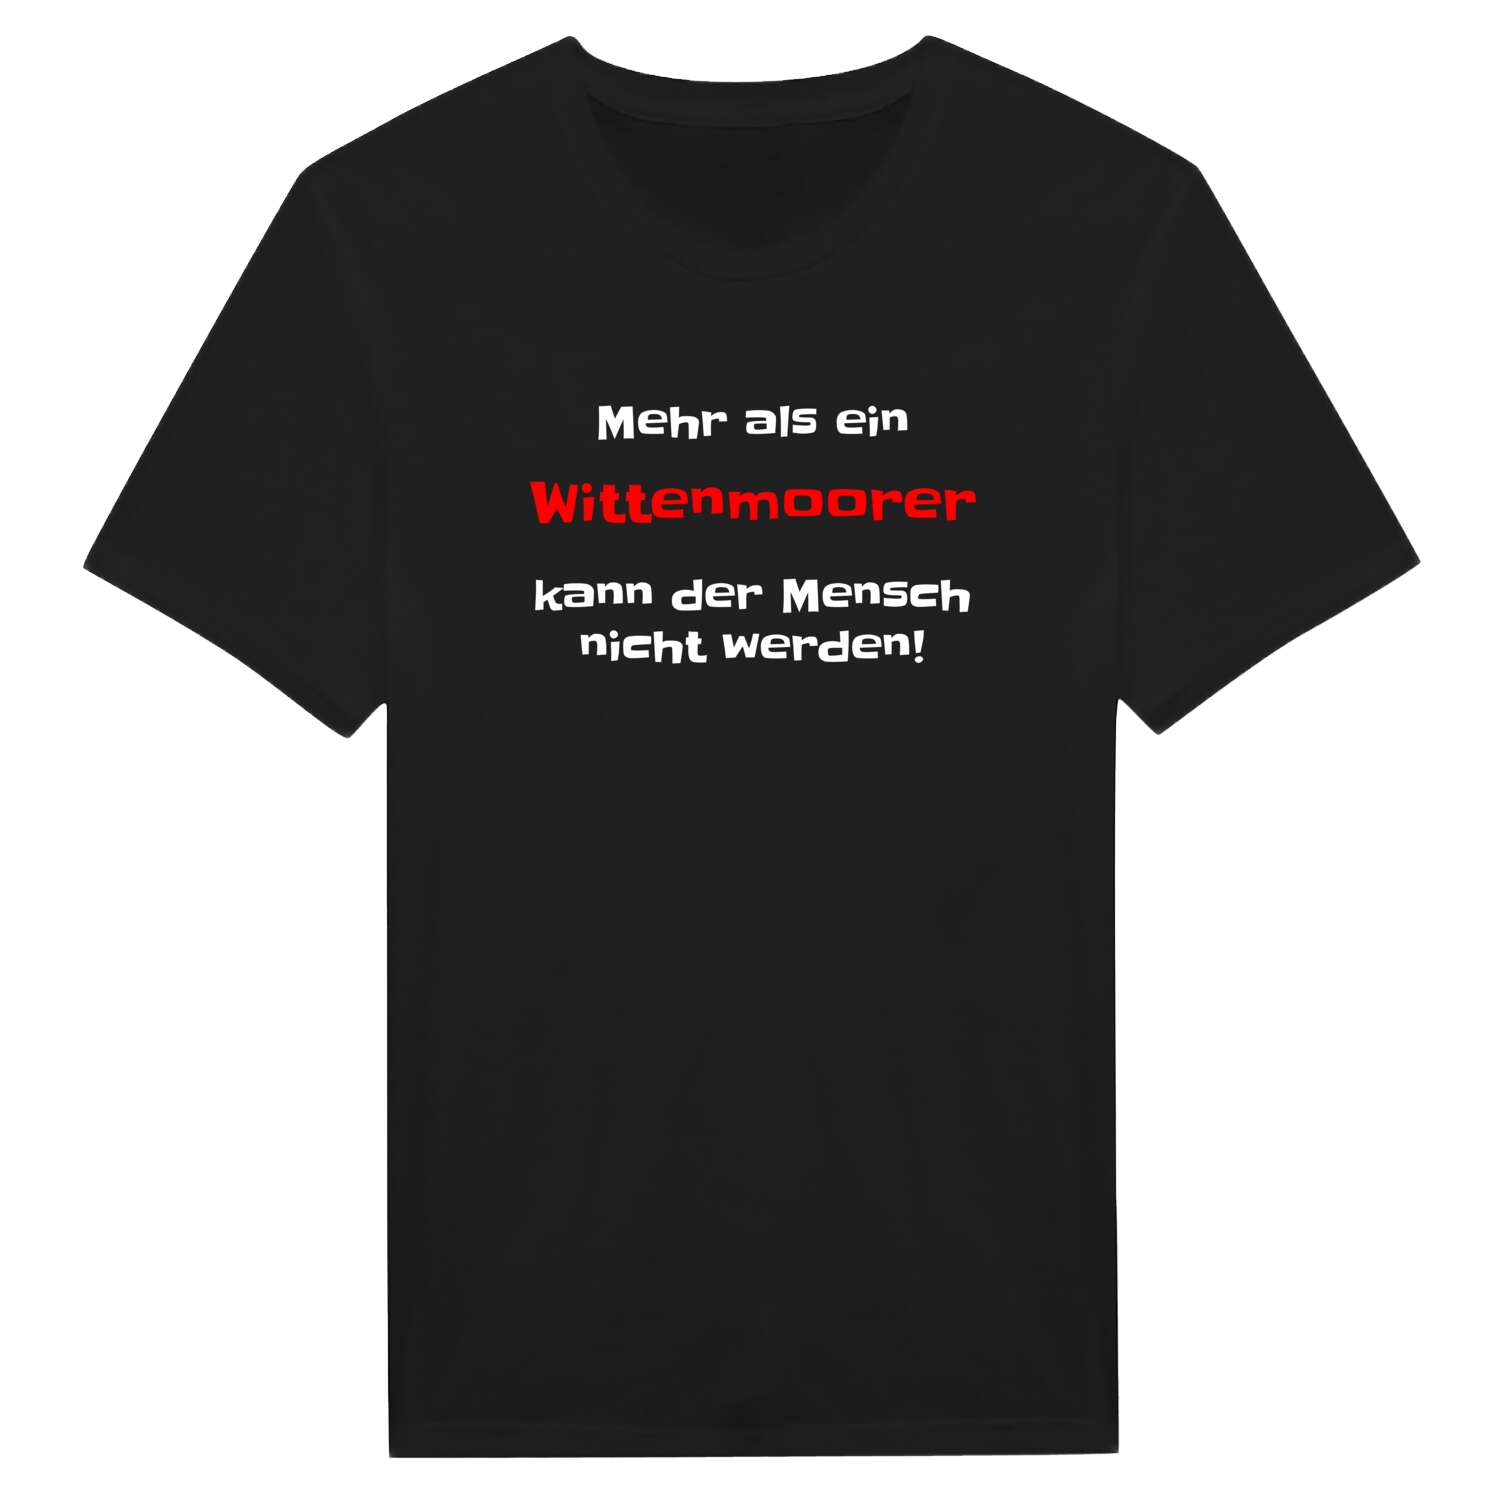 Wittenmoor T-Shirt »Mehr als ein«